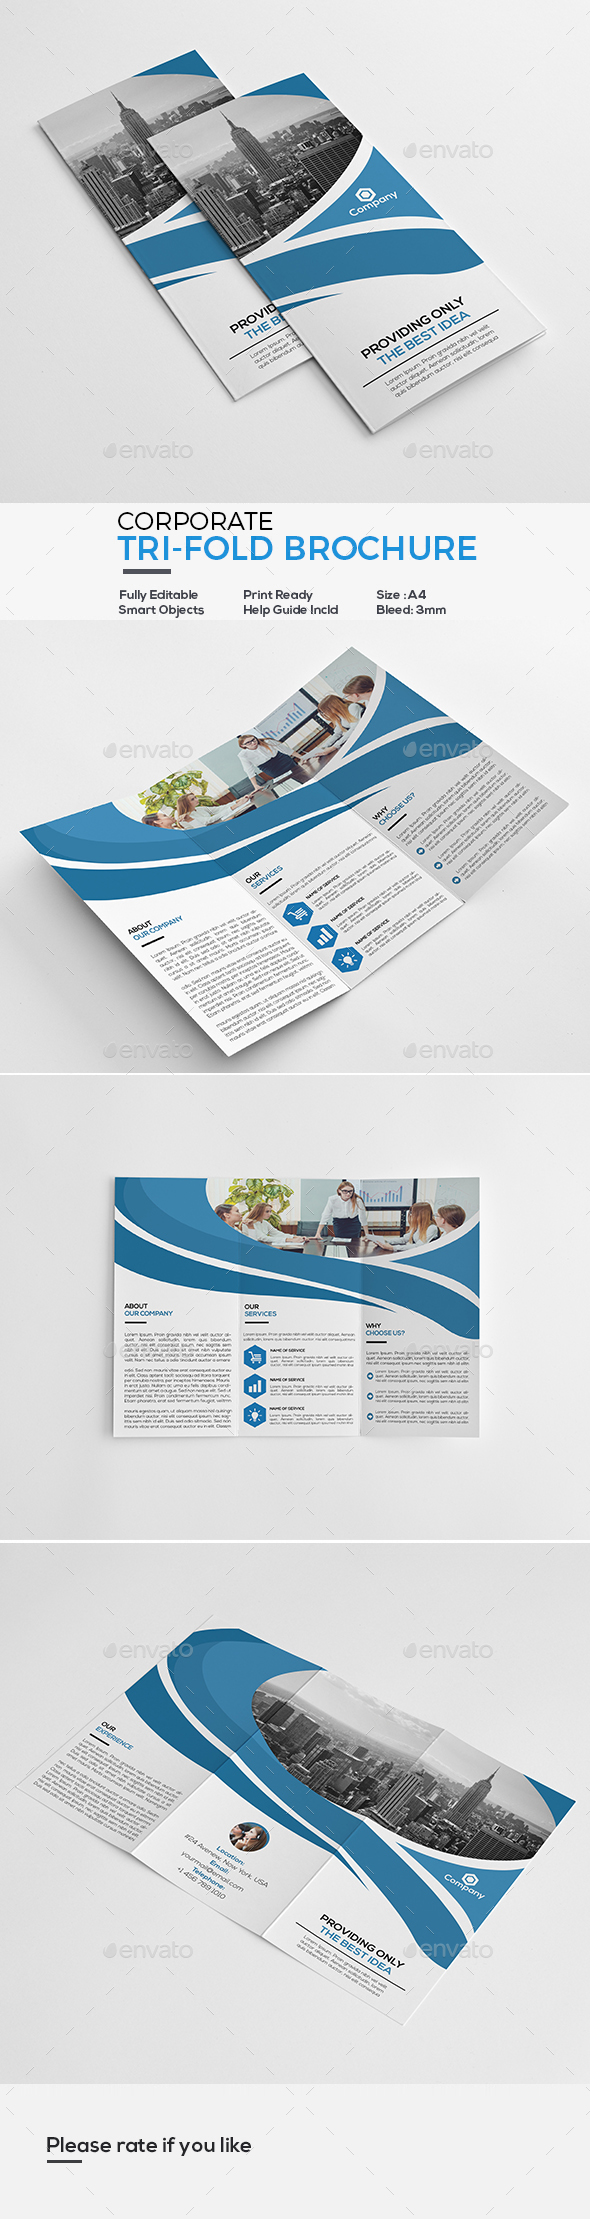 GraphicRiver Corporate Tri-Fold Brochure 20874833